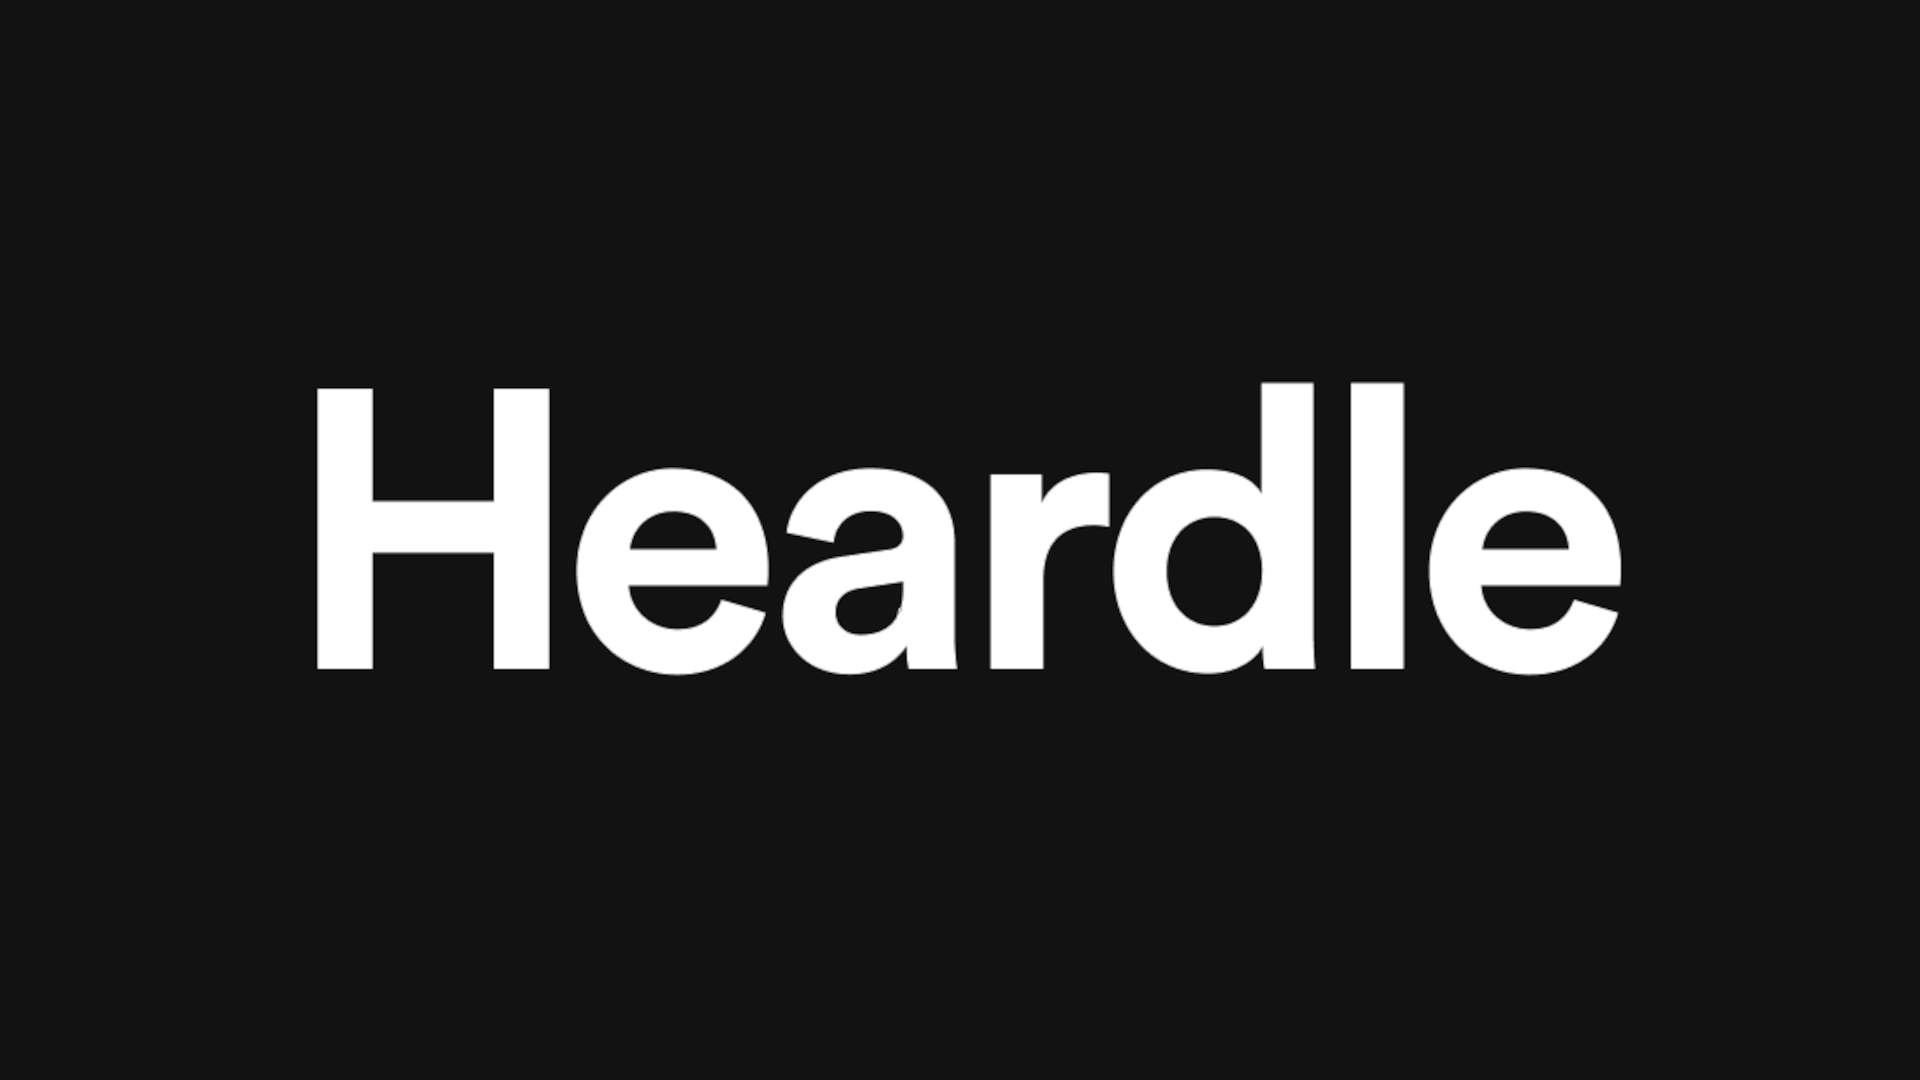 The Heardle logo